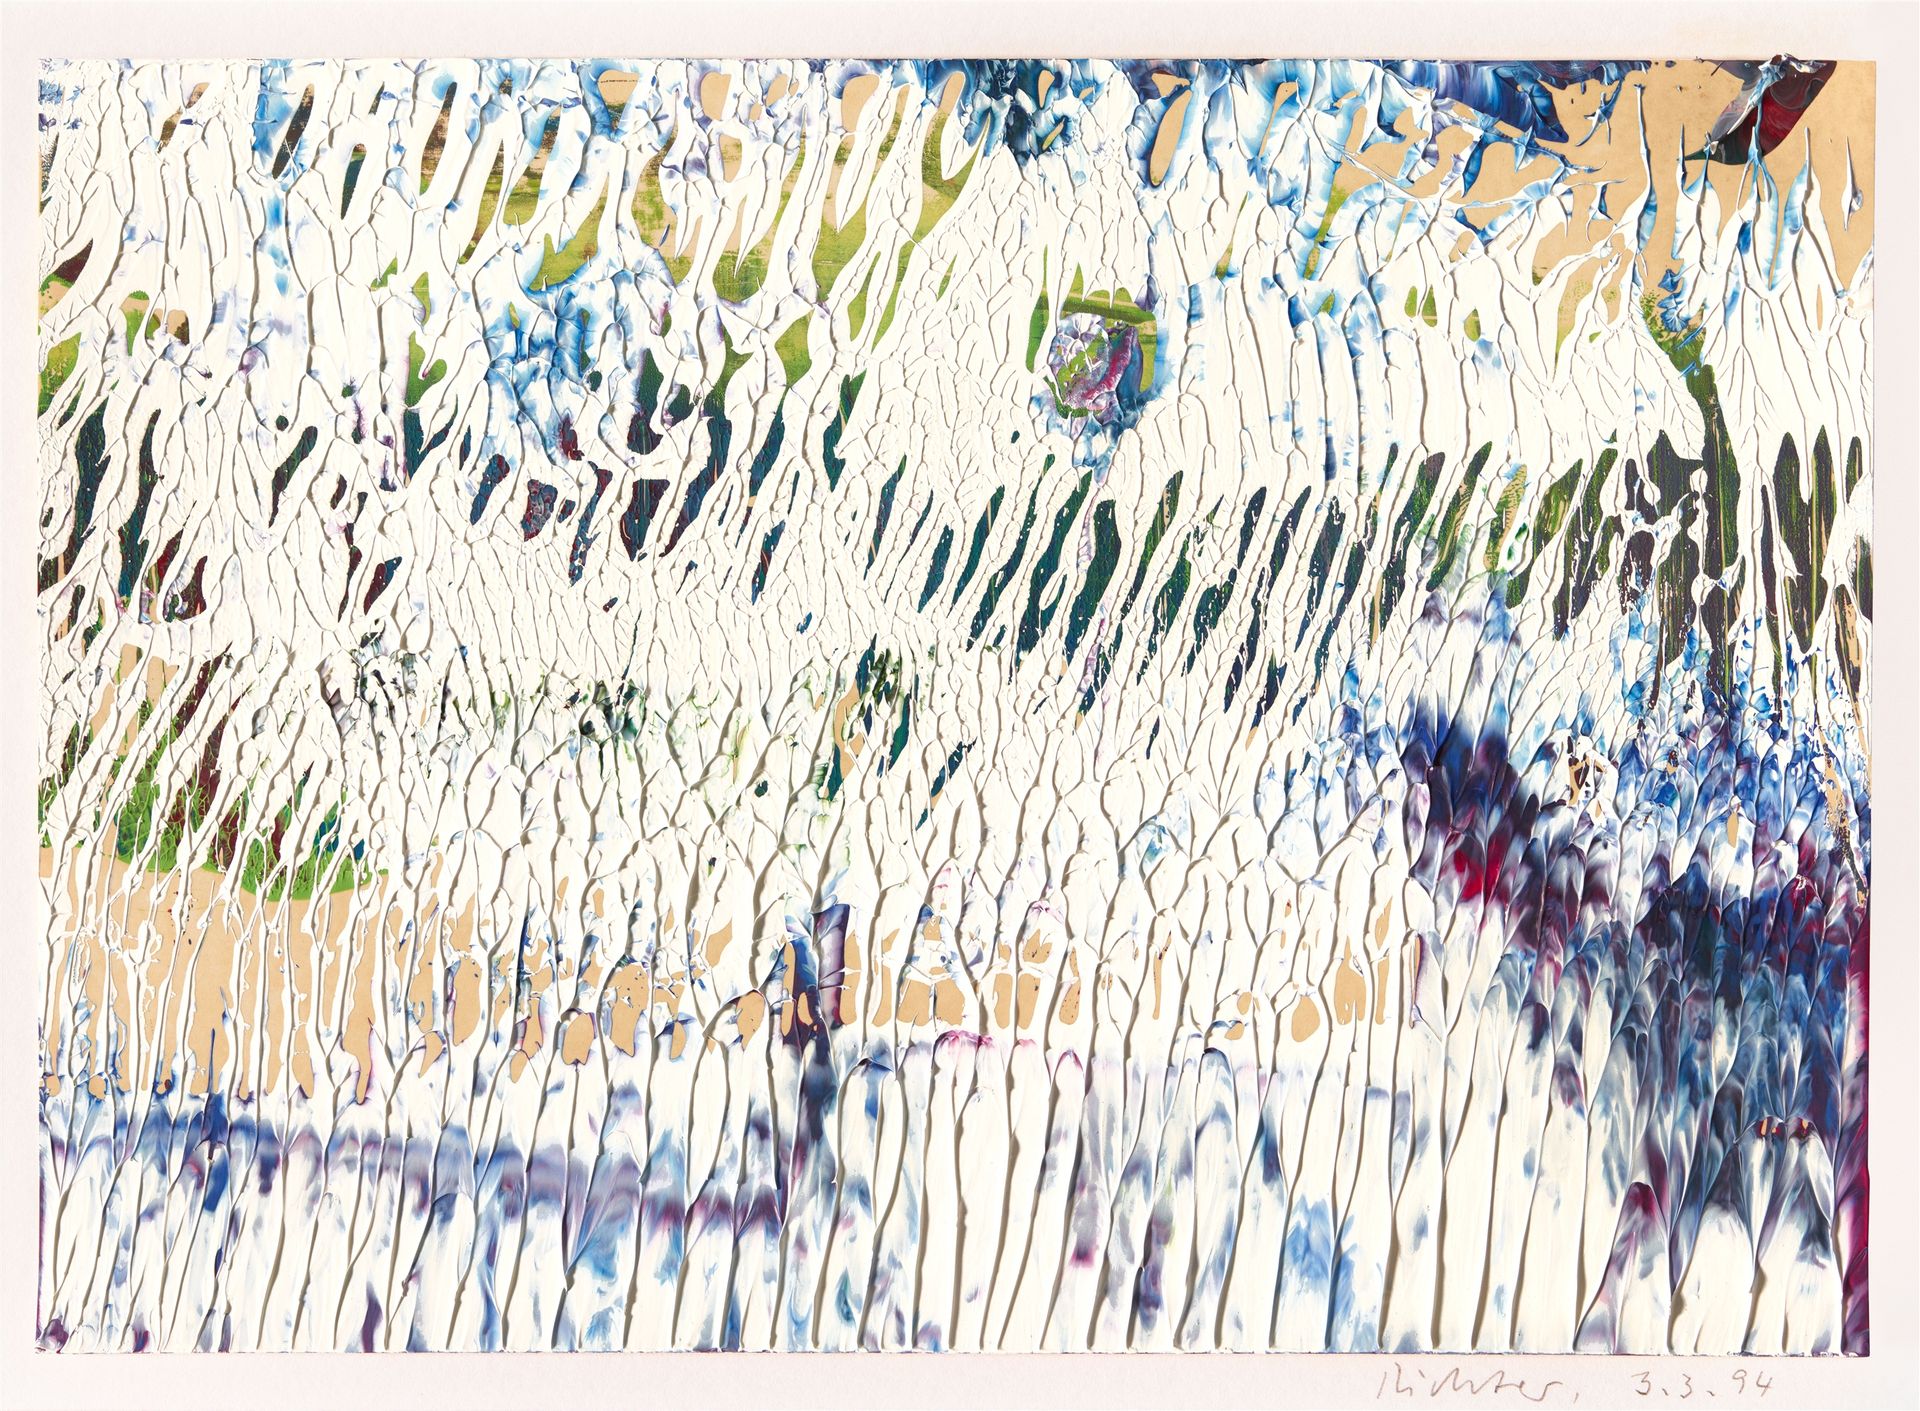 Gerhard Richter Gerhard Richter



3.3.94

1994



Öl auf Karton 21 x 29,8 cm. A&hellip;